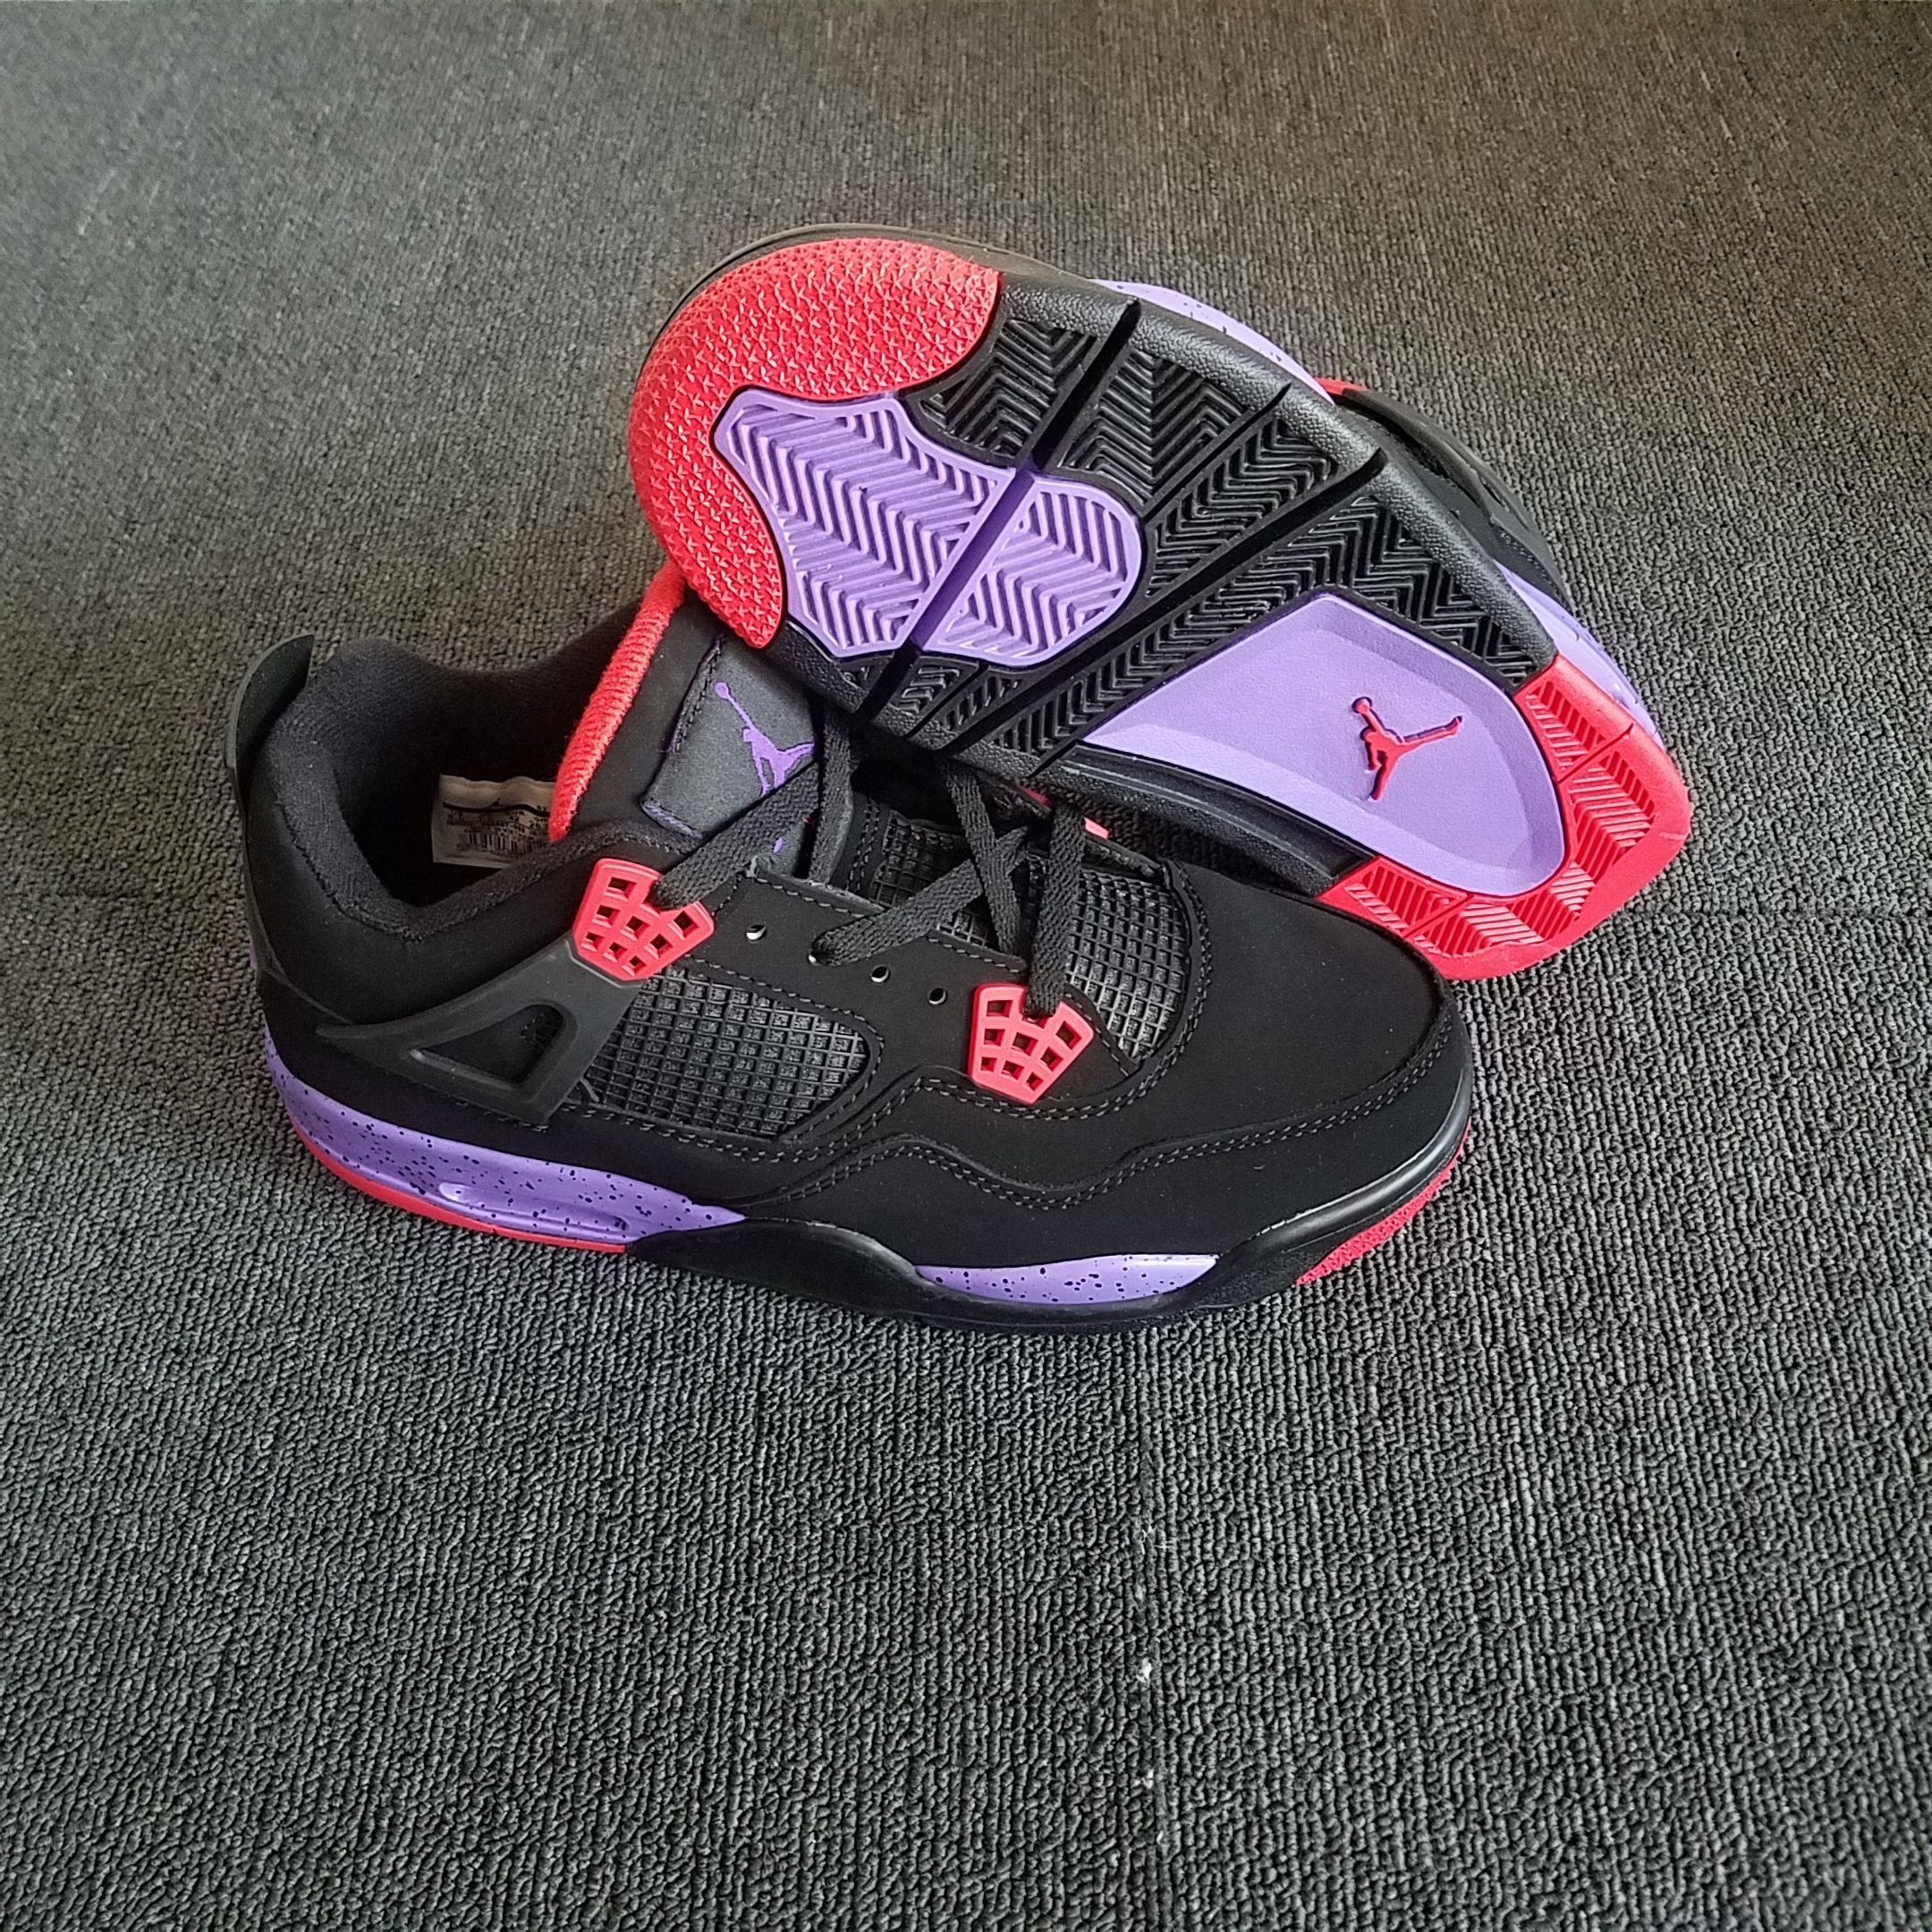 New Air Jordan 4 “Raptors” Lover Shoes